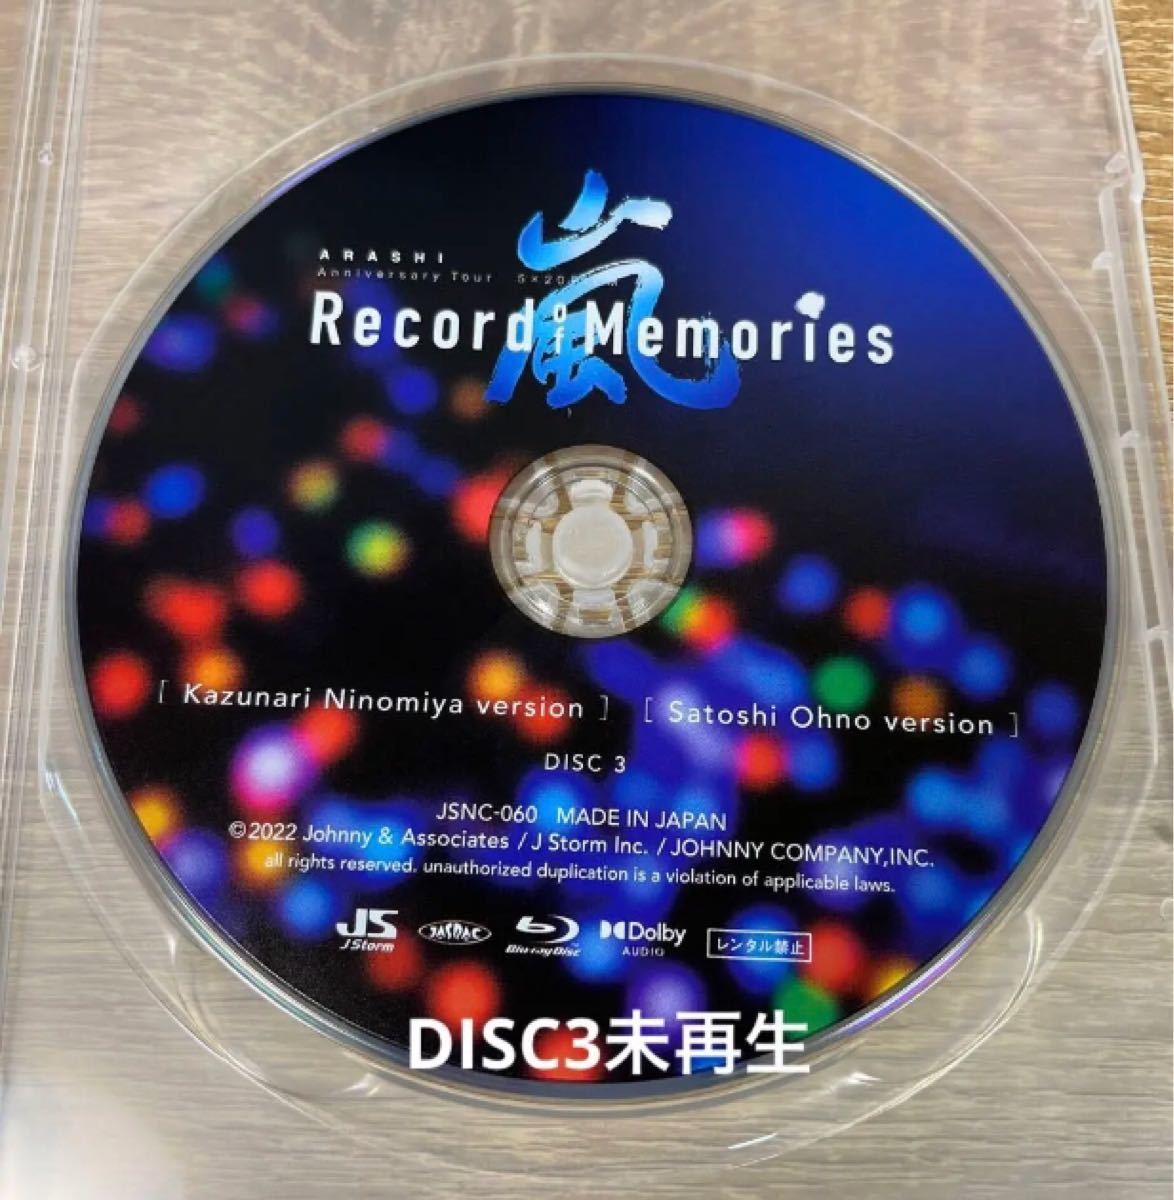 2022新生活 Blu-ray【嵐FC限定盤】5×20 “Record of Memories” | www